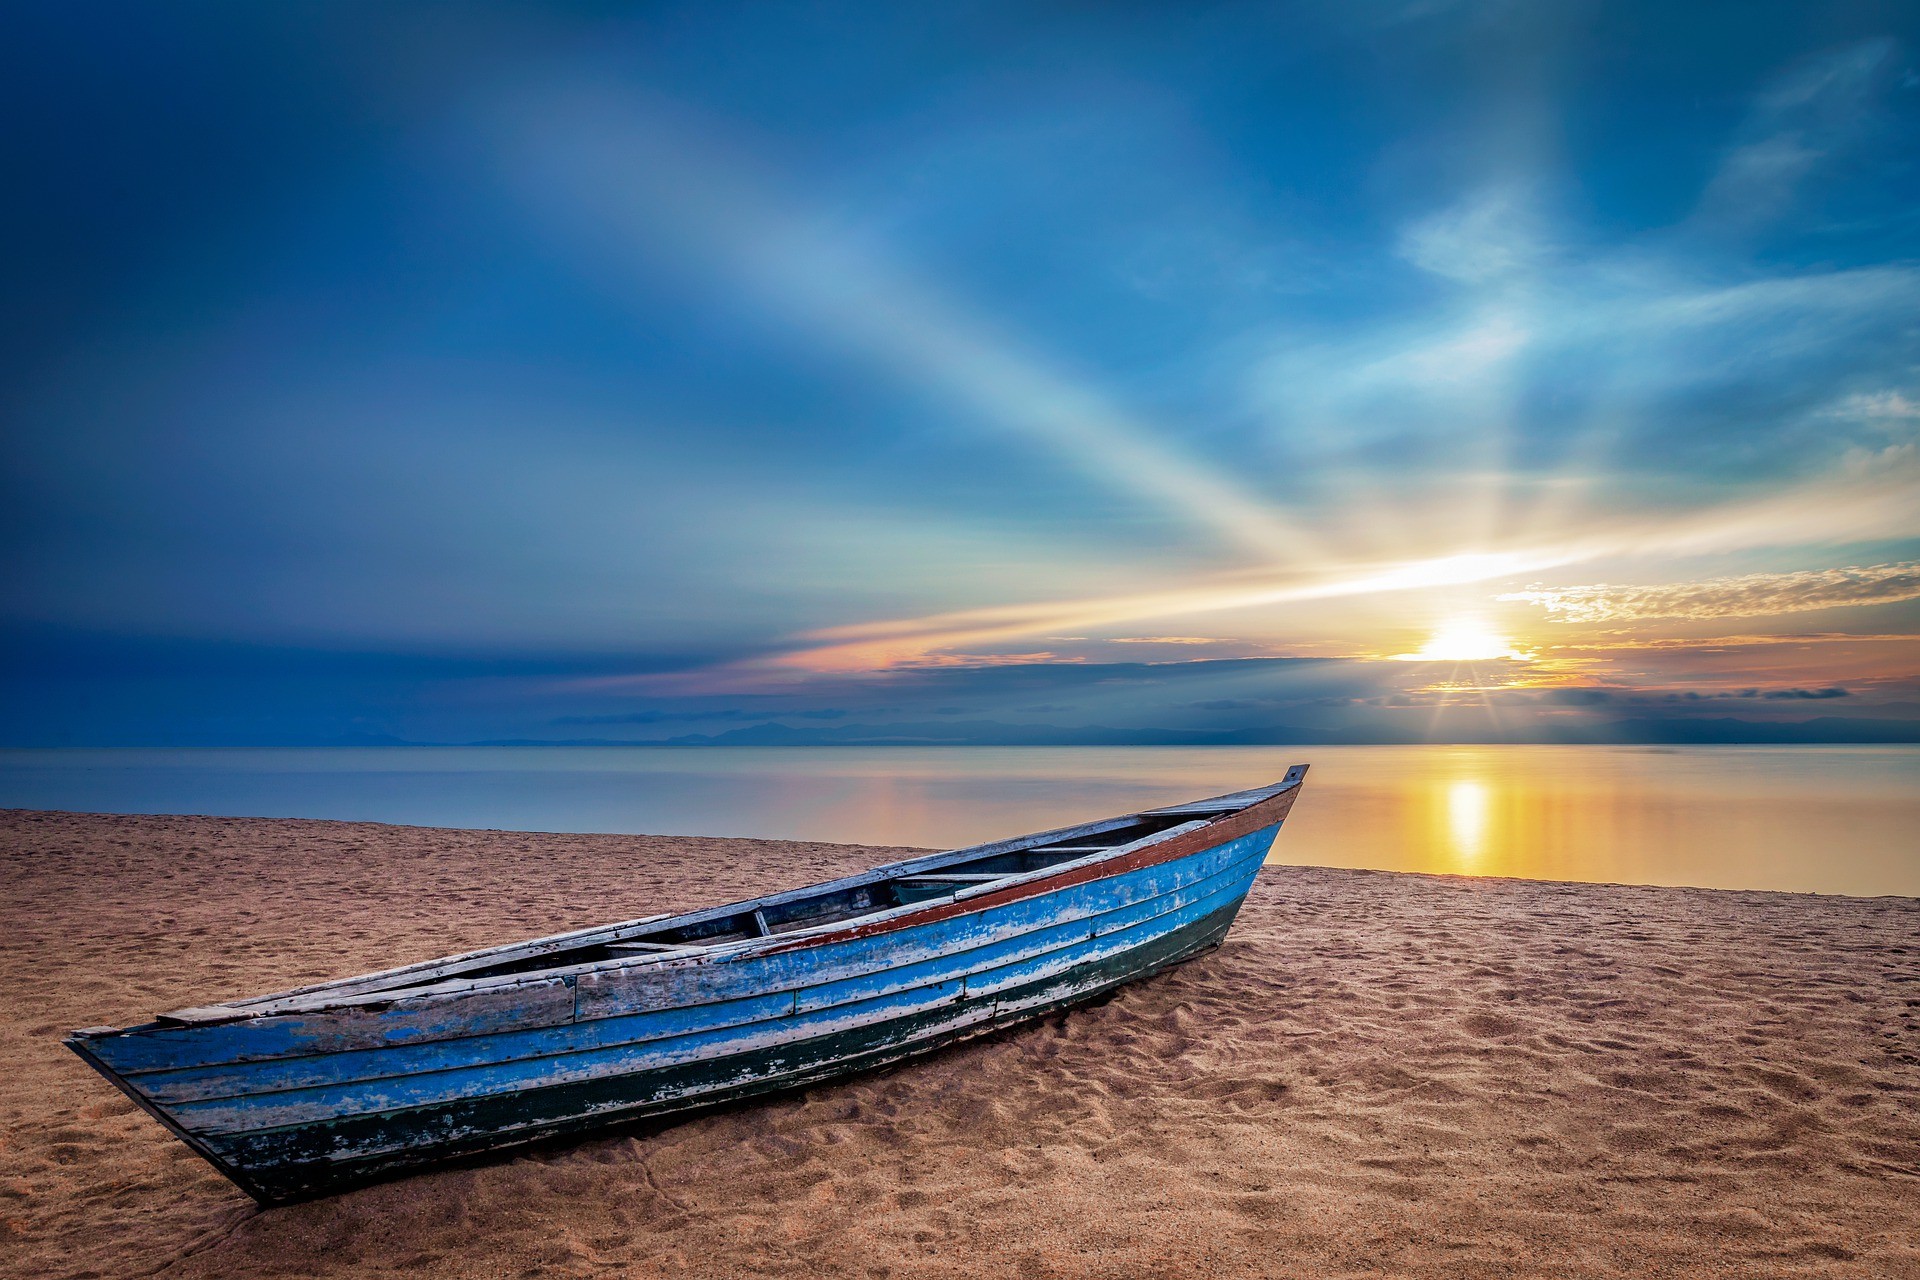 Łódka stojąca na plaży na tle morza i zachodzącego słońca